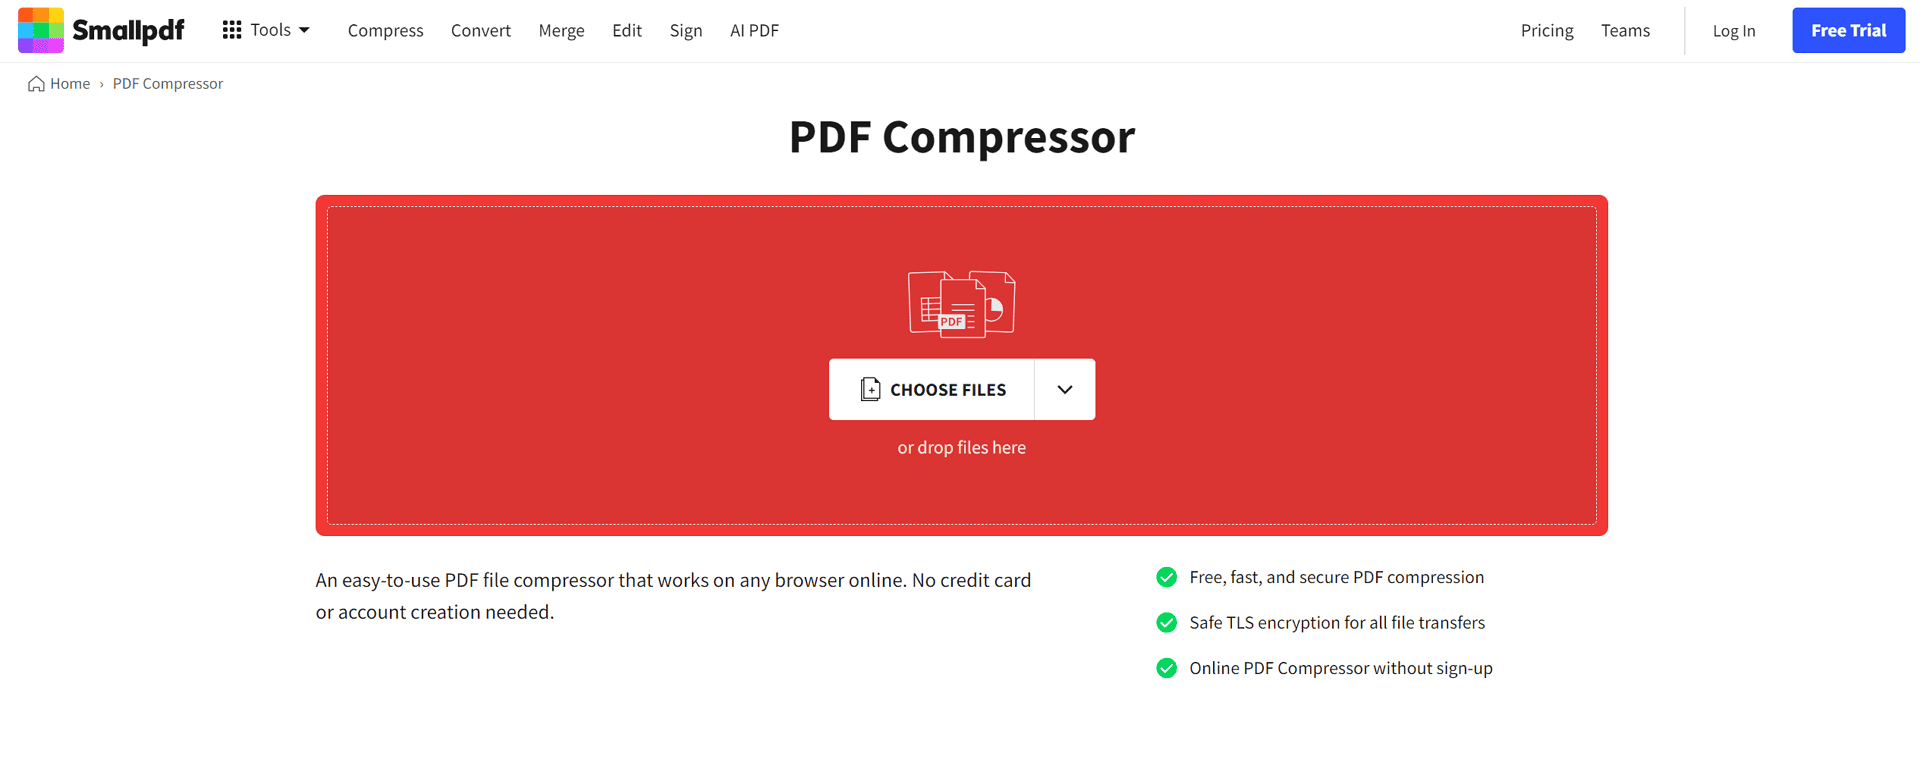 Smallpdf - PDF Compressor